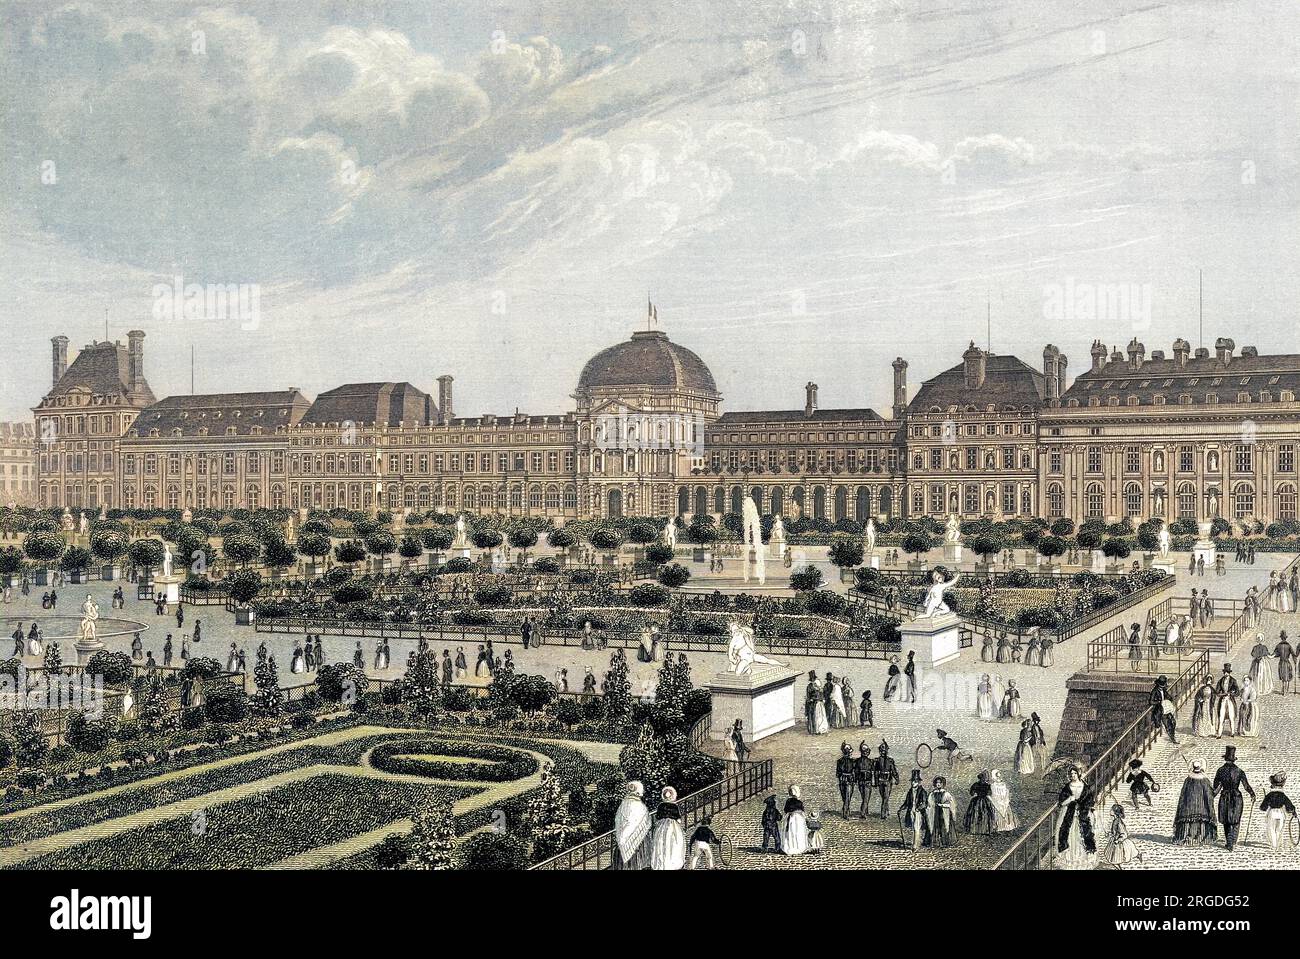 Die Gartenfront des königlichen palais, die während der Kommune in ein paar Jahren vollständig zerstört wird. Stockfoto